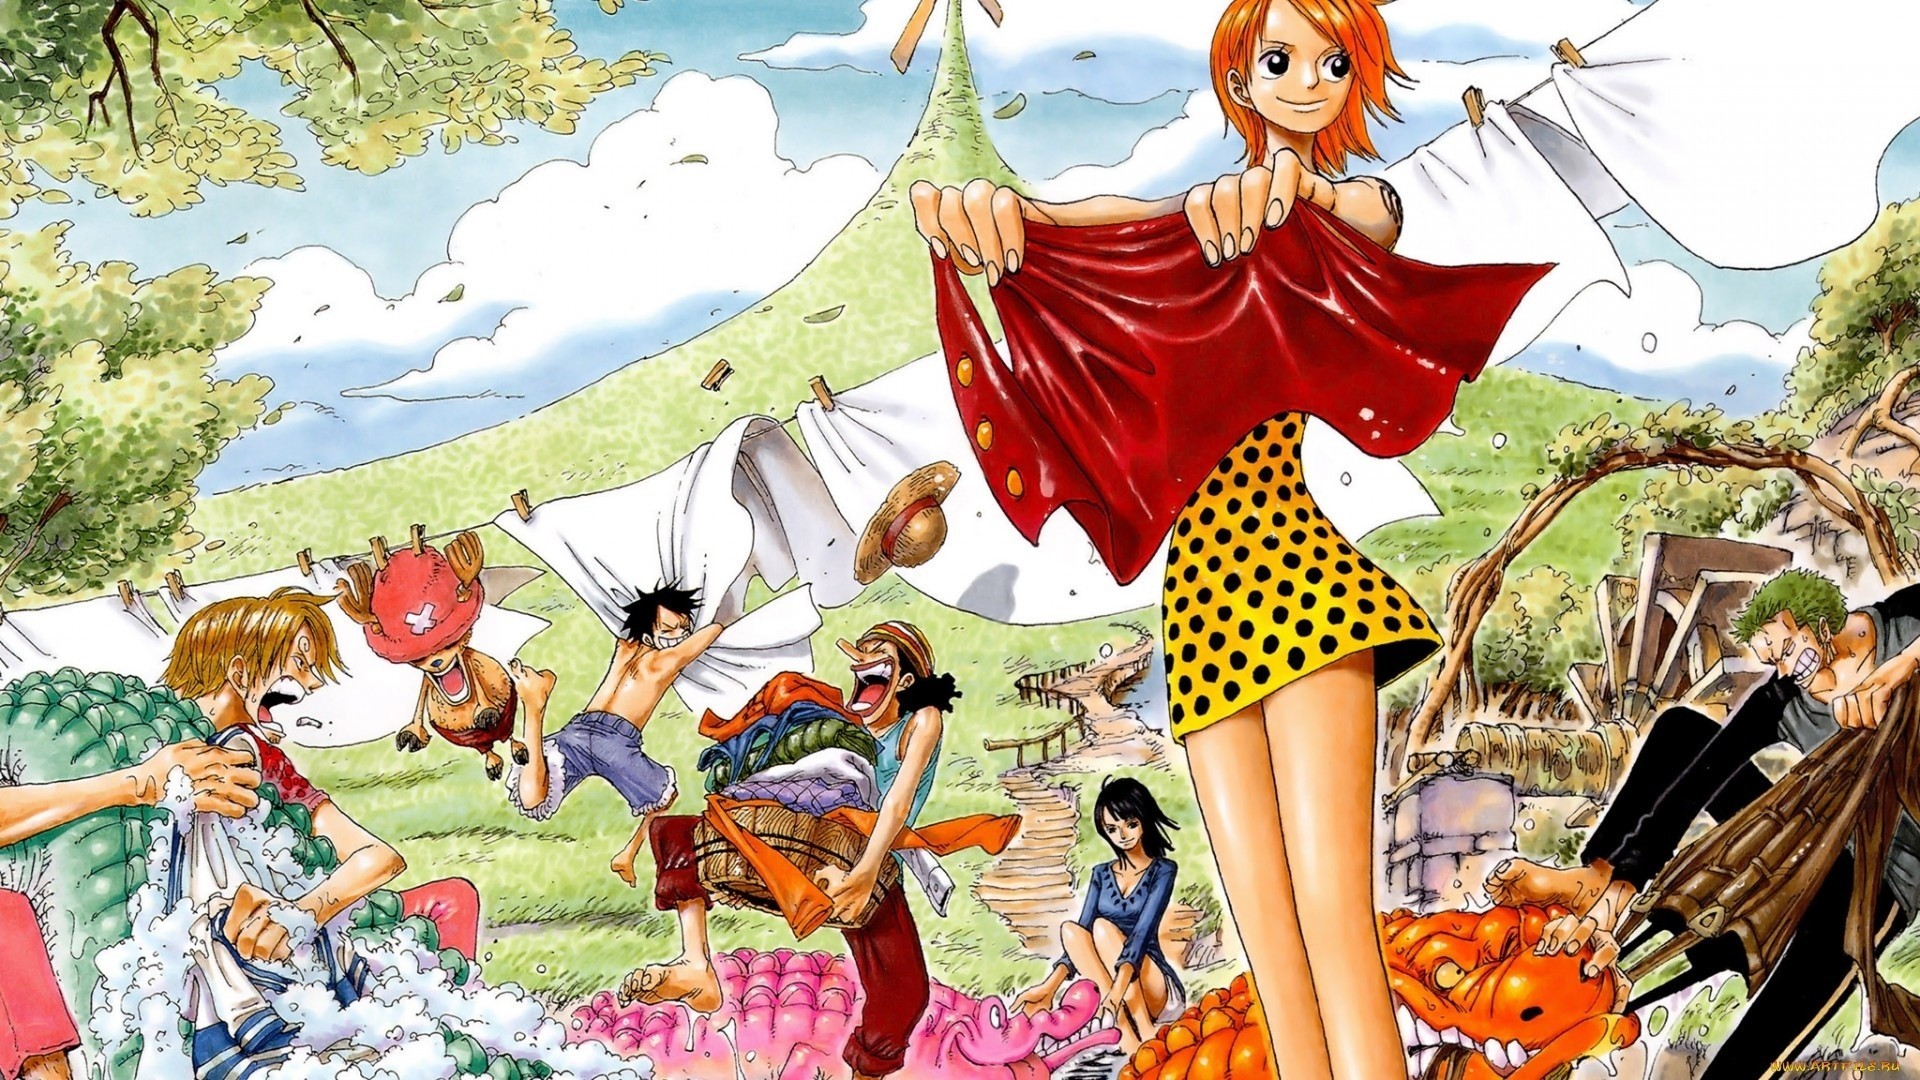 Anime 1920x1080 Tony Tony Chopper Usopp Sanji Roronoa Zoro anime girls anime boys redhead polka dots dress laundry Nico Robin One Piece